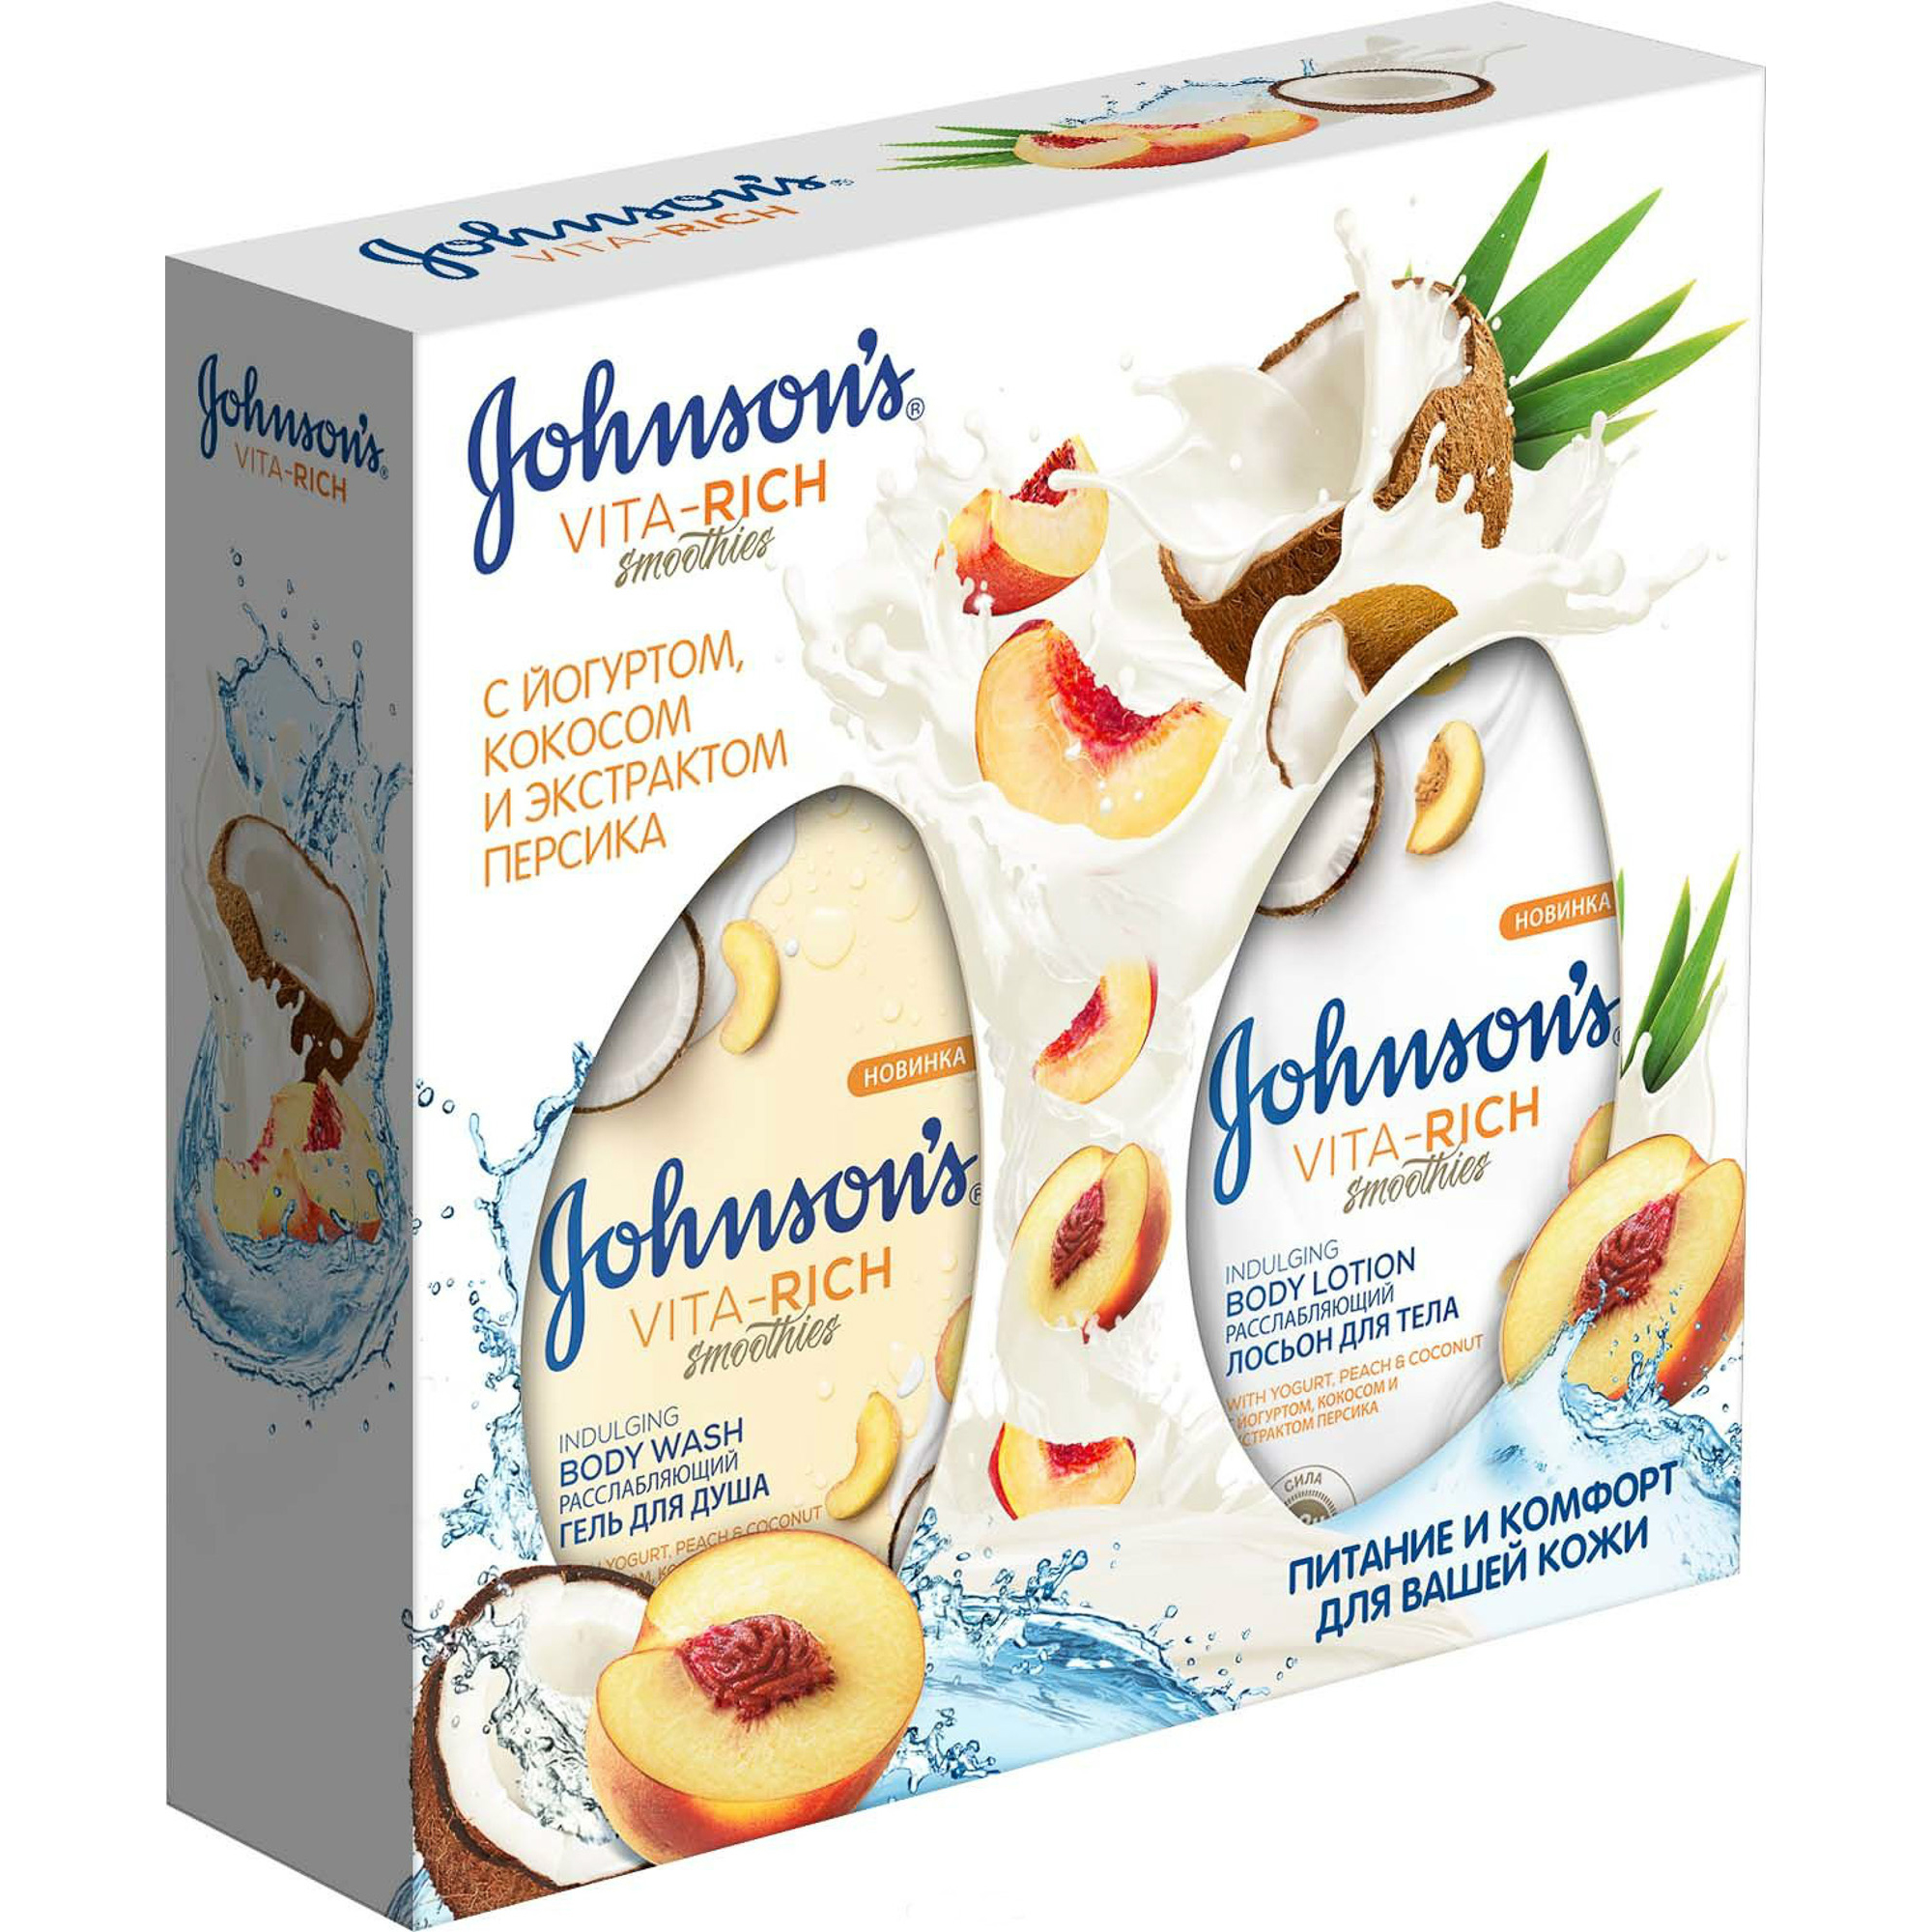 фото Подарочный набор johnson's vita-rich расслабляющий с йогуртом, кокосом и экстрактом персика